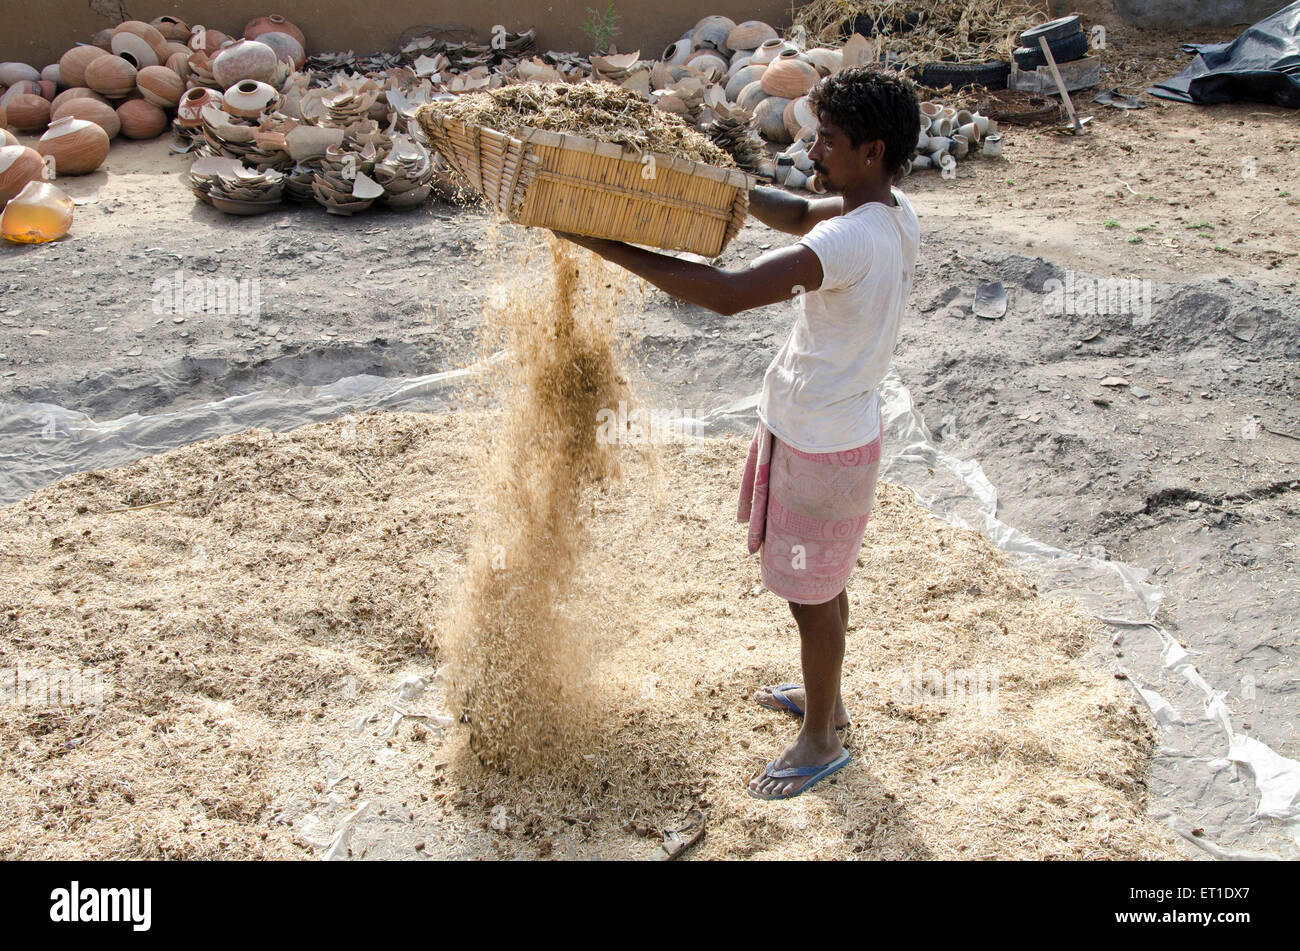 Nettoyage de l'herbe sèche dans l'homme à Bikaner Rajasthan Inde Asie Banque D'Images